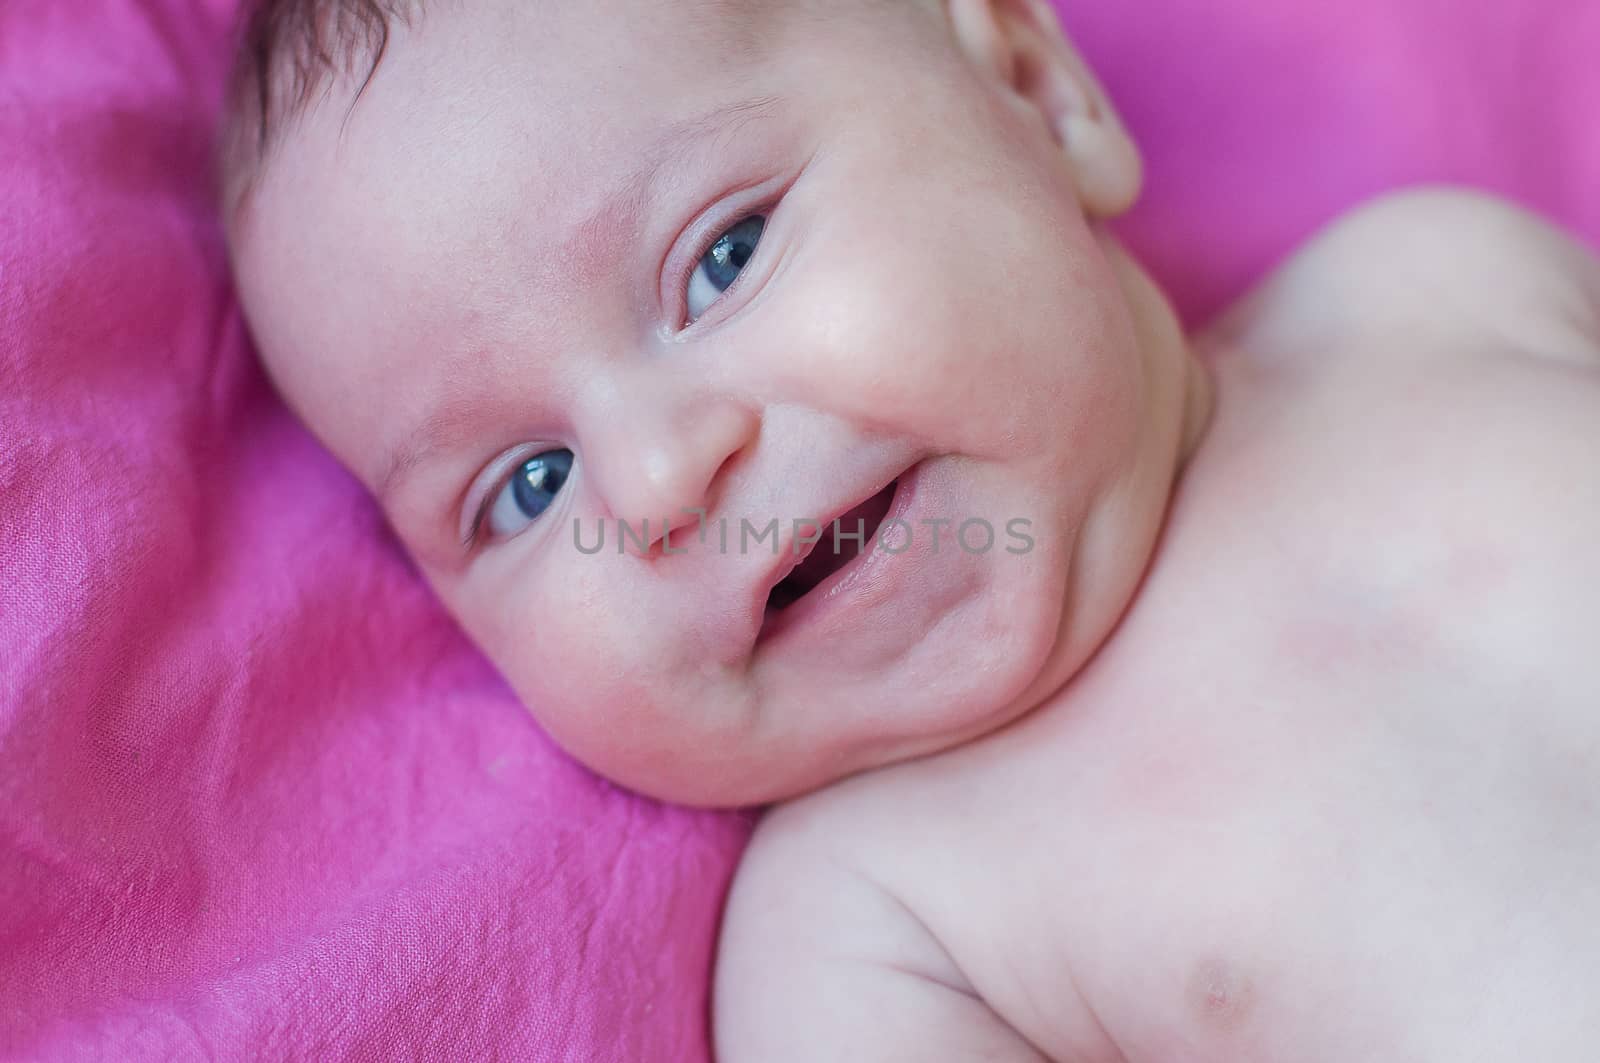 Little smiling baby closeup portrait